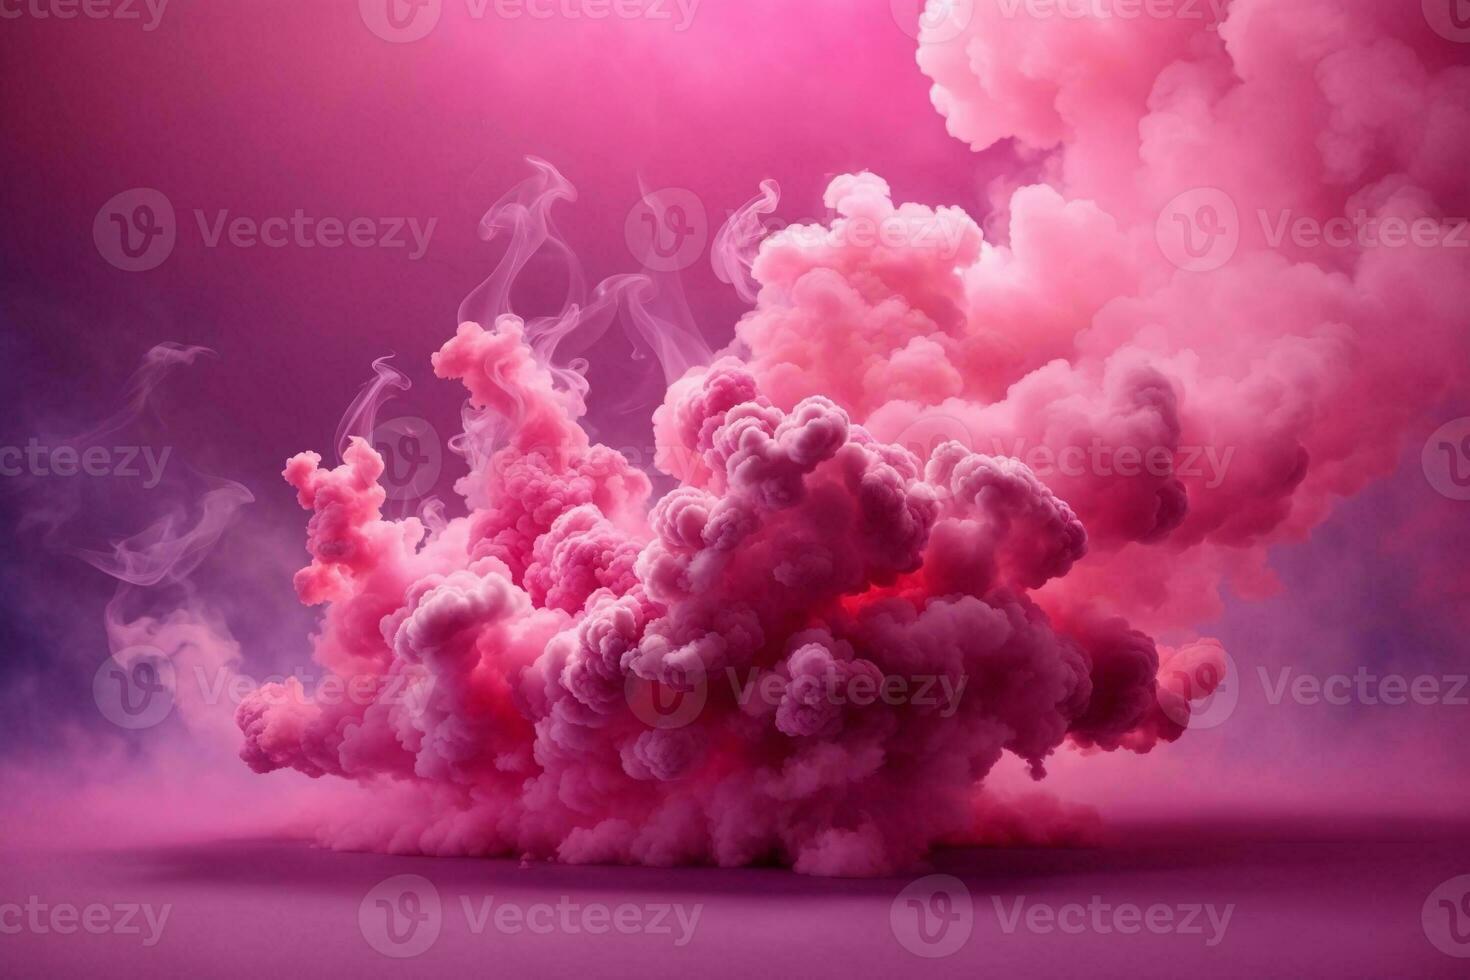 Pink Smoke Bomb Wallpaper, Smoke Bomb Background, Pink Smoke Bomb Effects Background, Smoke wallpapers, Colorful Smoke Background, Abstract Smoke Wallpapers, AI Generative photo